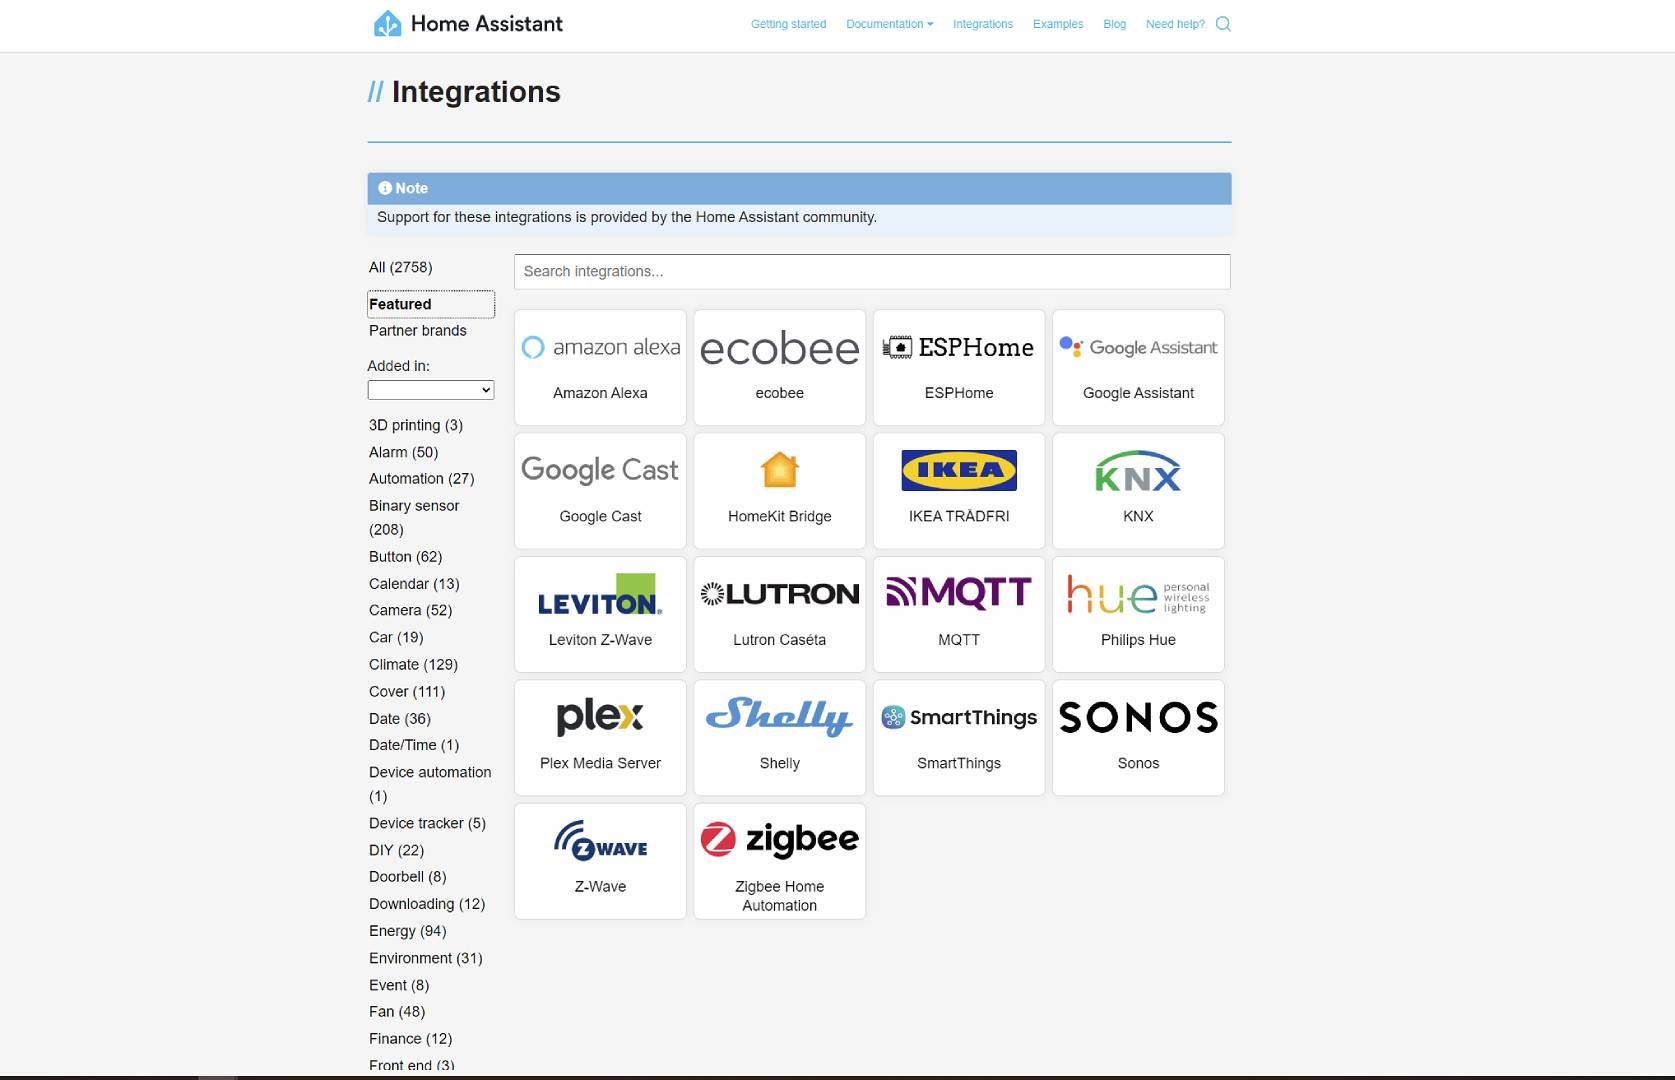 Uma captura de tela do catálogo de integrações do Home Assistant